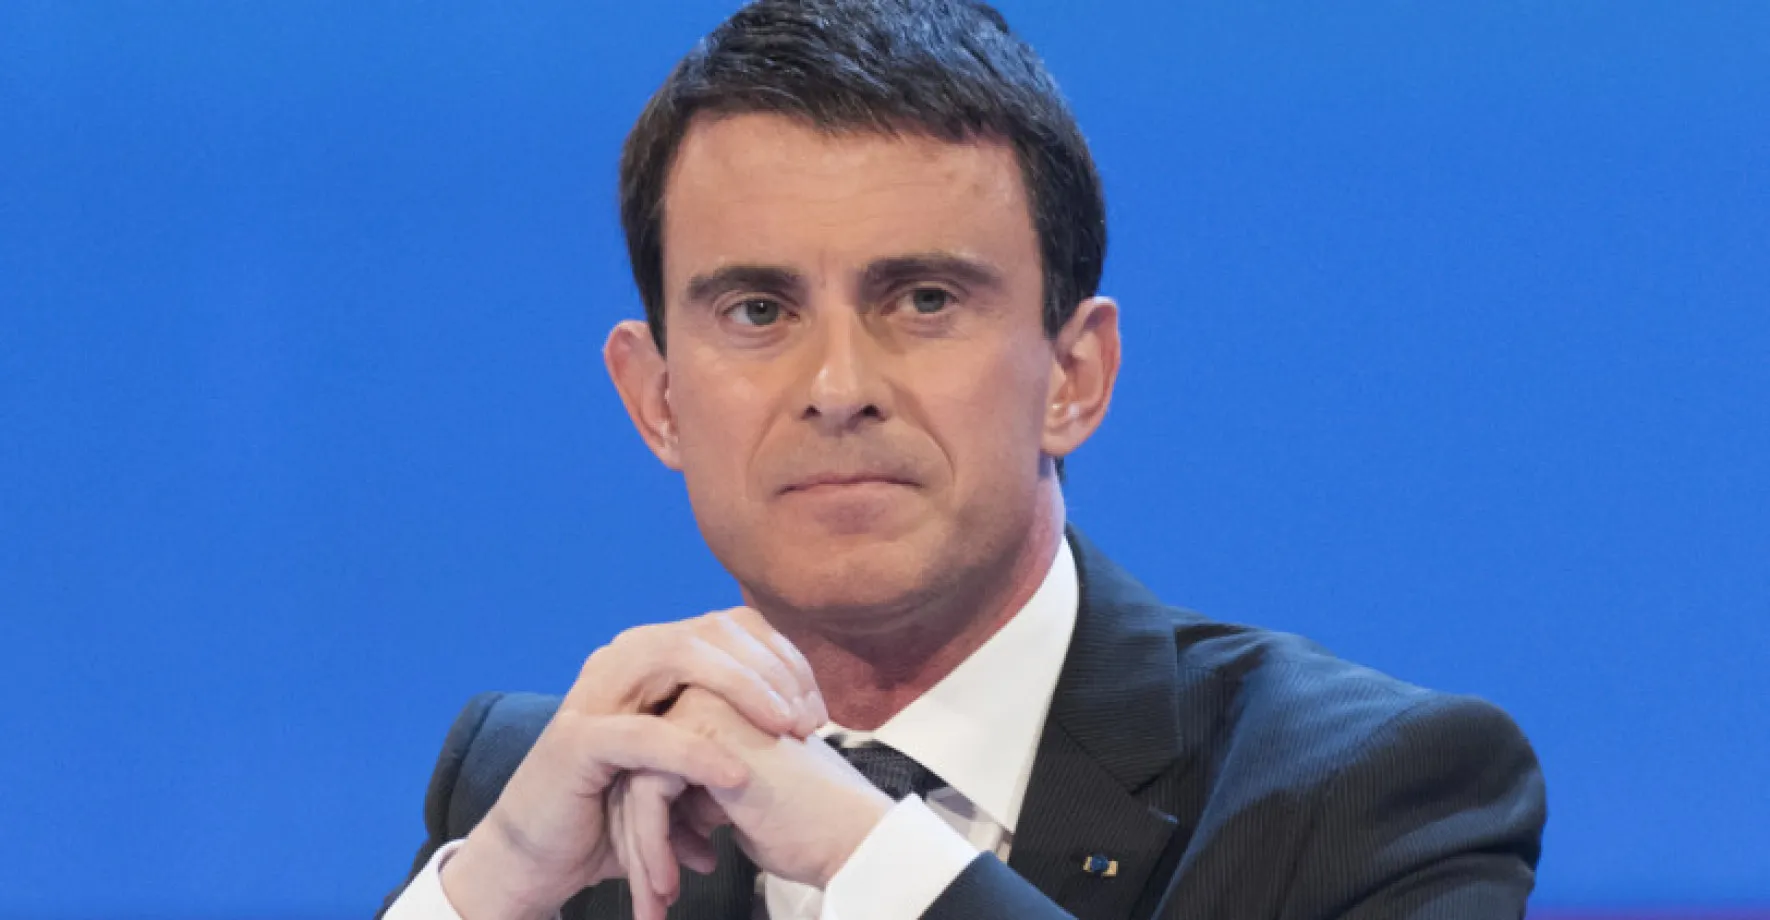 Přestaňme se omlouvat, že jsme Francouzi. Hlavním nepřítelem je islamismus, burcuje expremiér Valls